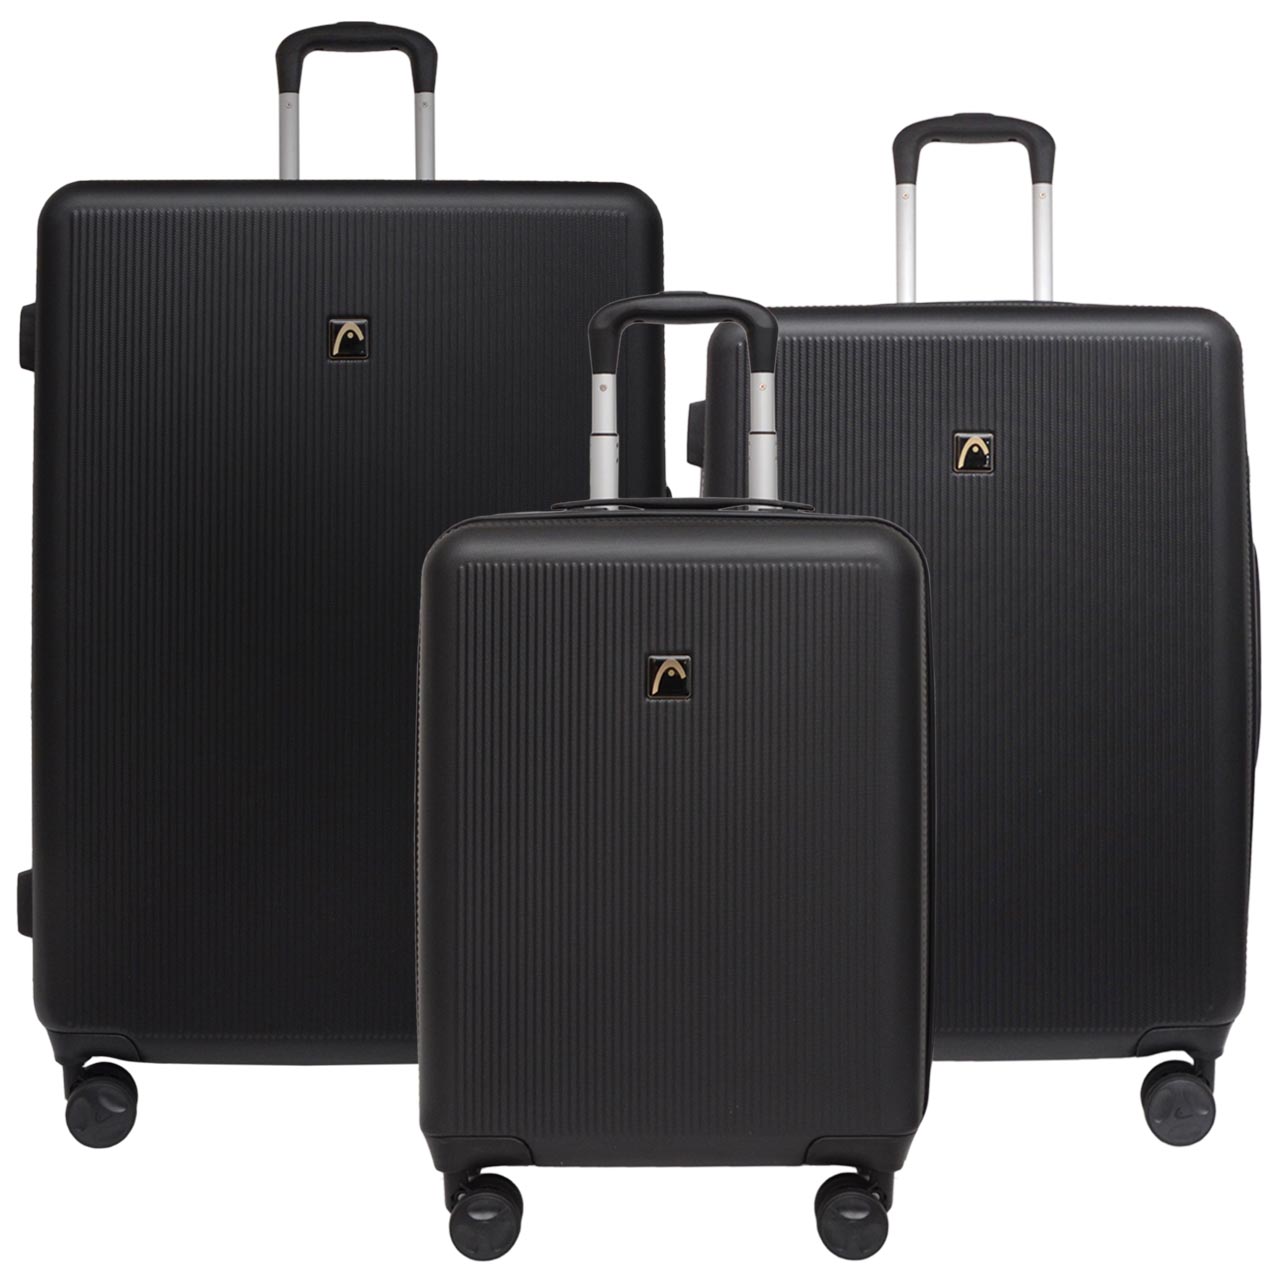 مجموعه سه عددی چمدان هد مدل HL 006 -  - 2